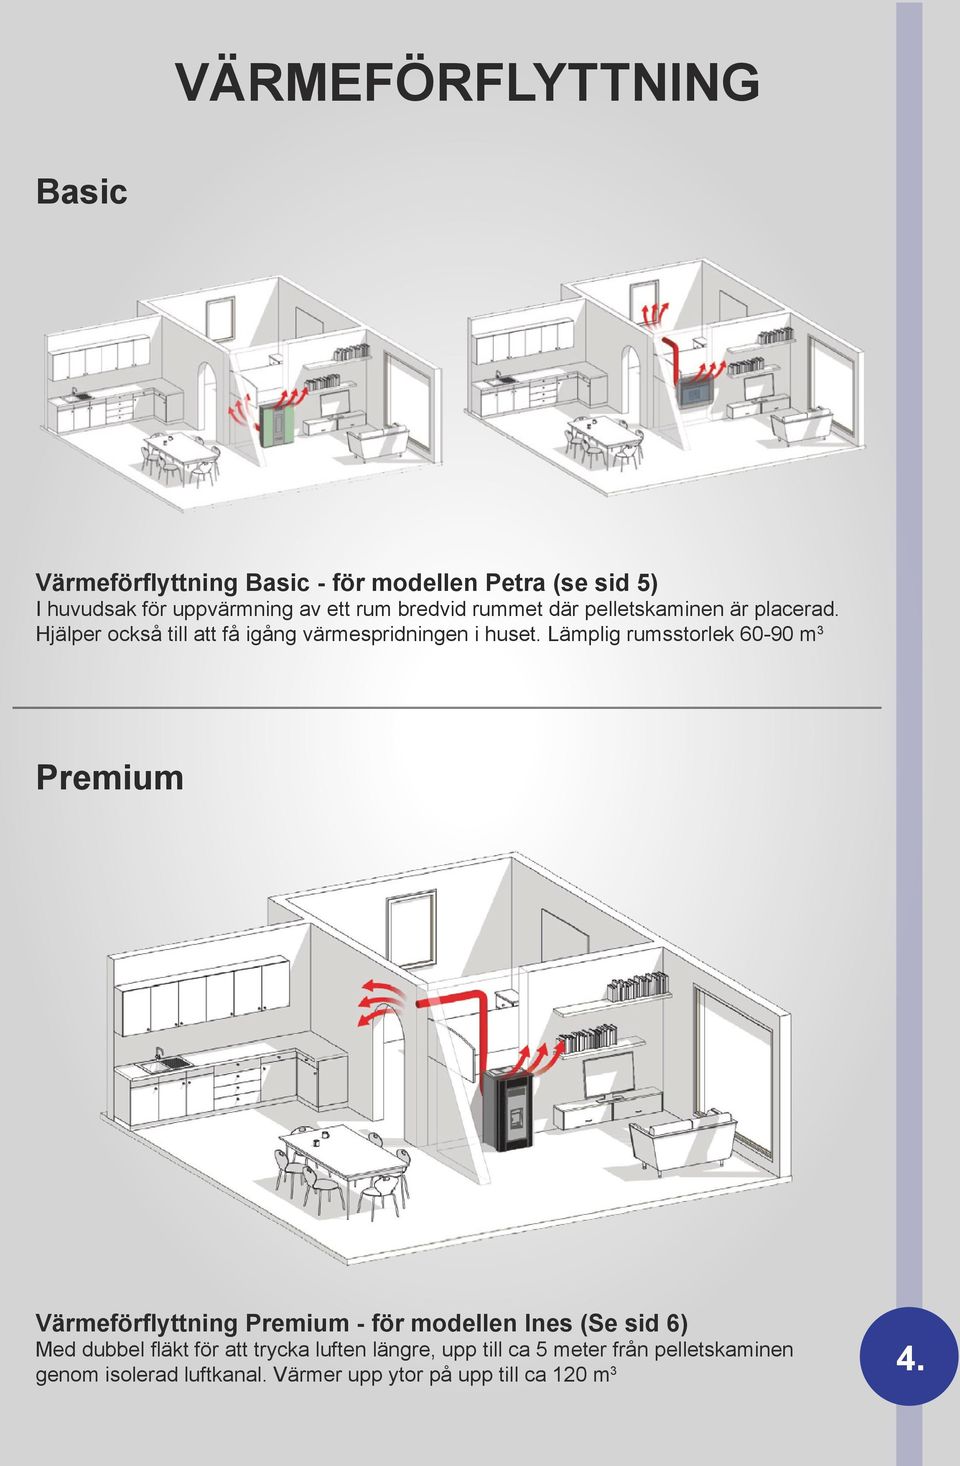 Lämplig rumsstorlek 60-90 m 3 Premium Värmeförflyttning Premium - för modellen Ines (Se sid 6) Med dubbel fläkt för